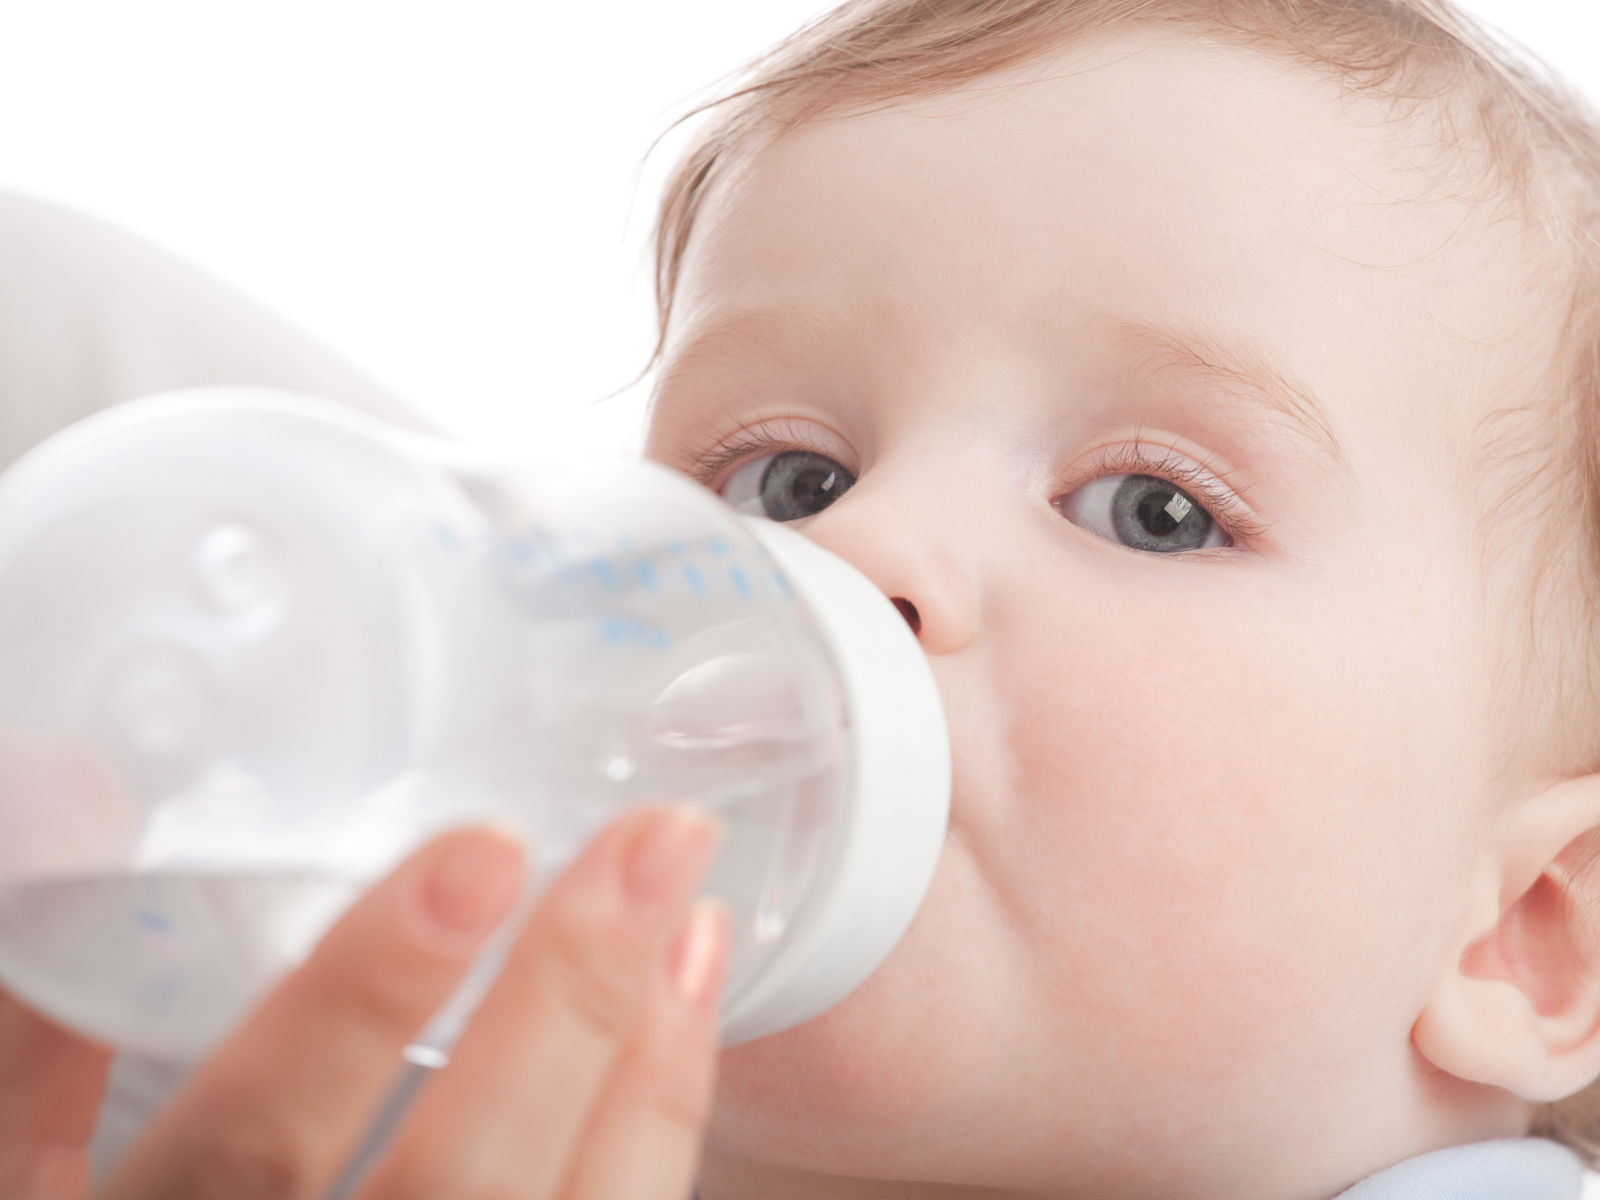 Пьет ли новорожденный воду. Девочка пьет из бутылочки. Ребенок пьет воду. Жажда у детей. Питье новорожденного ребенка водой.